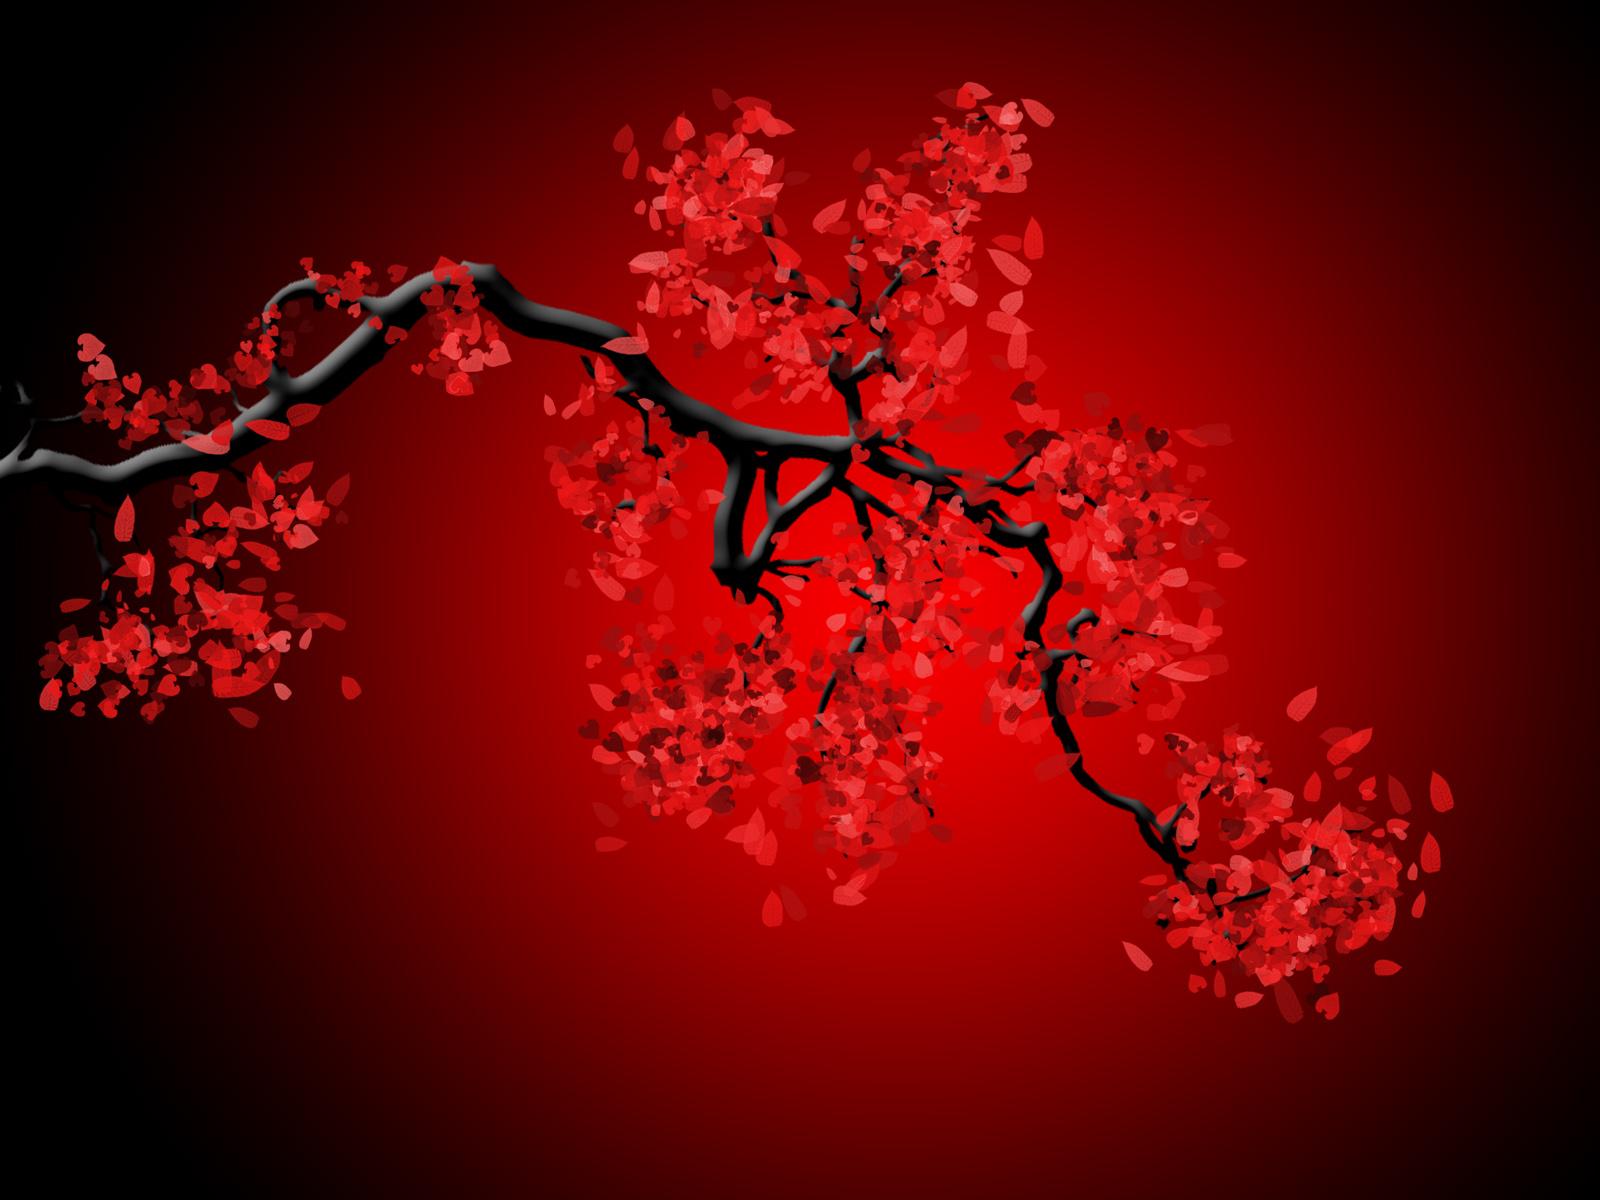 Red Japanese Cherry Blossom Wallpaper Full Modern Ideas Widescreen Wallpaper Cherry Blossom ANIME FESTIVAL